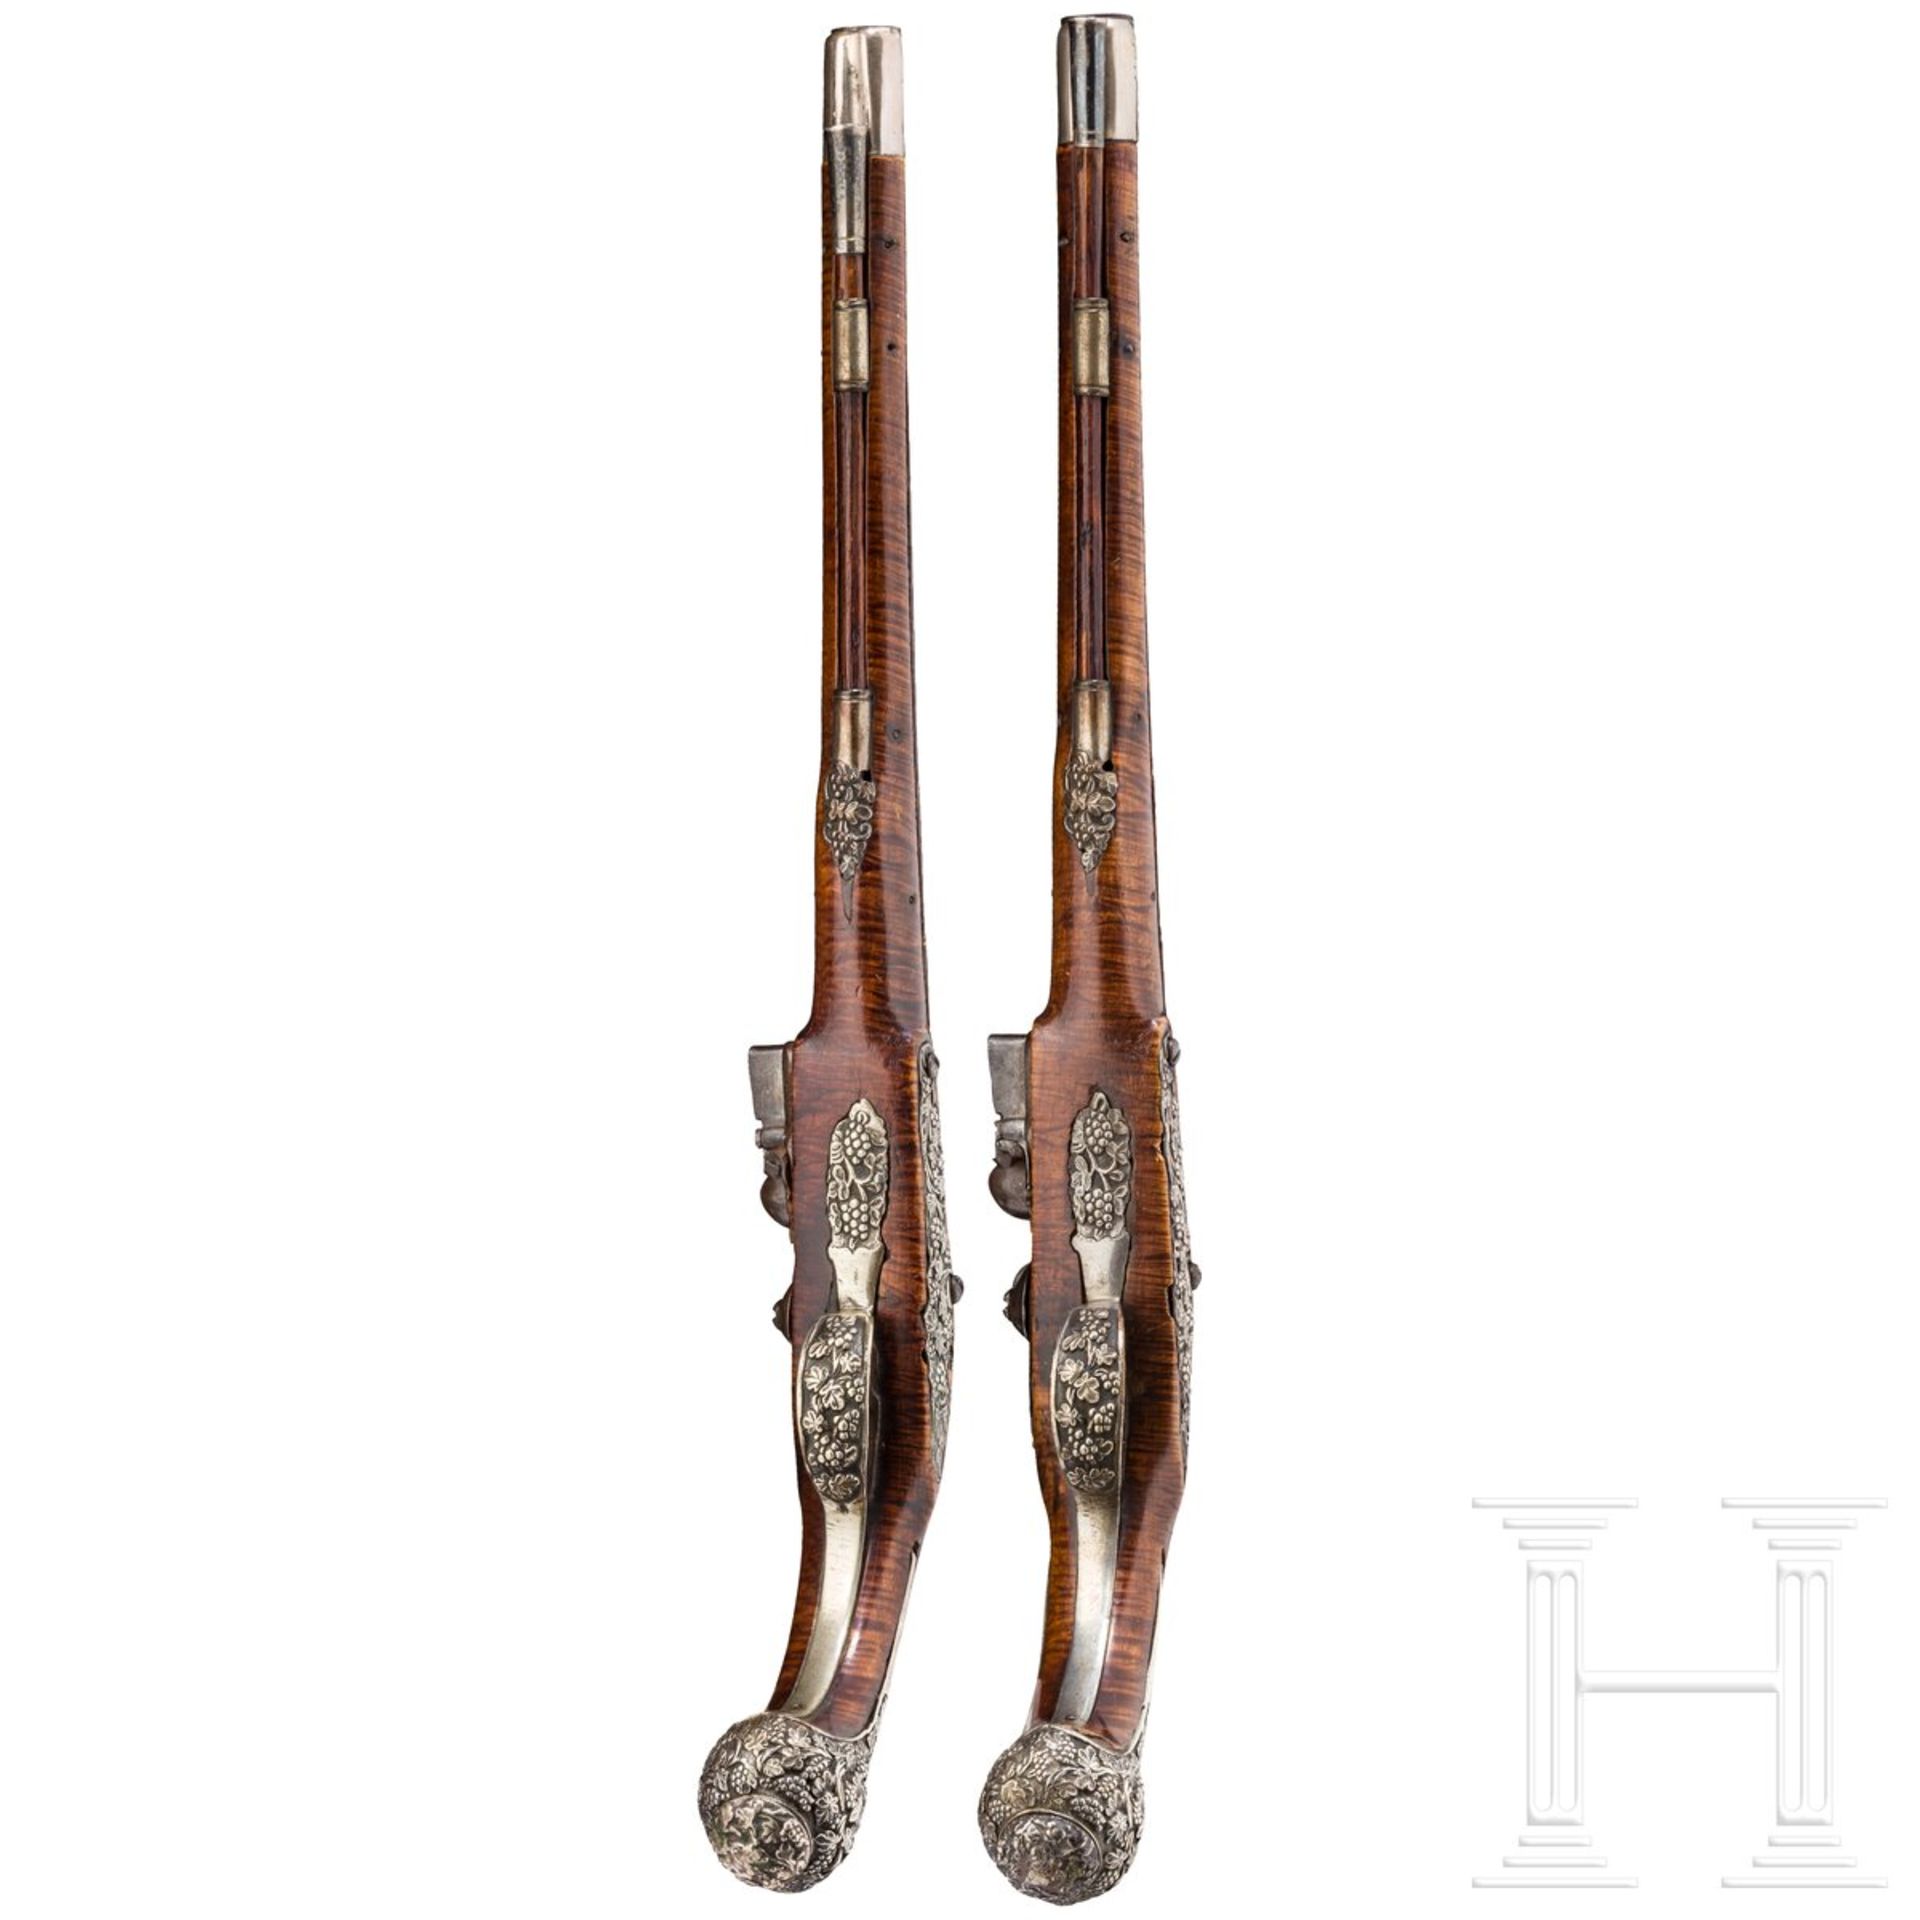 Ein Paar silbermontierte Steinschlosspistolen, osmanisch, 1. Hälfte 19. Jhdt. - Image 4 of 6